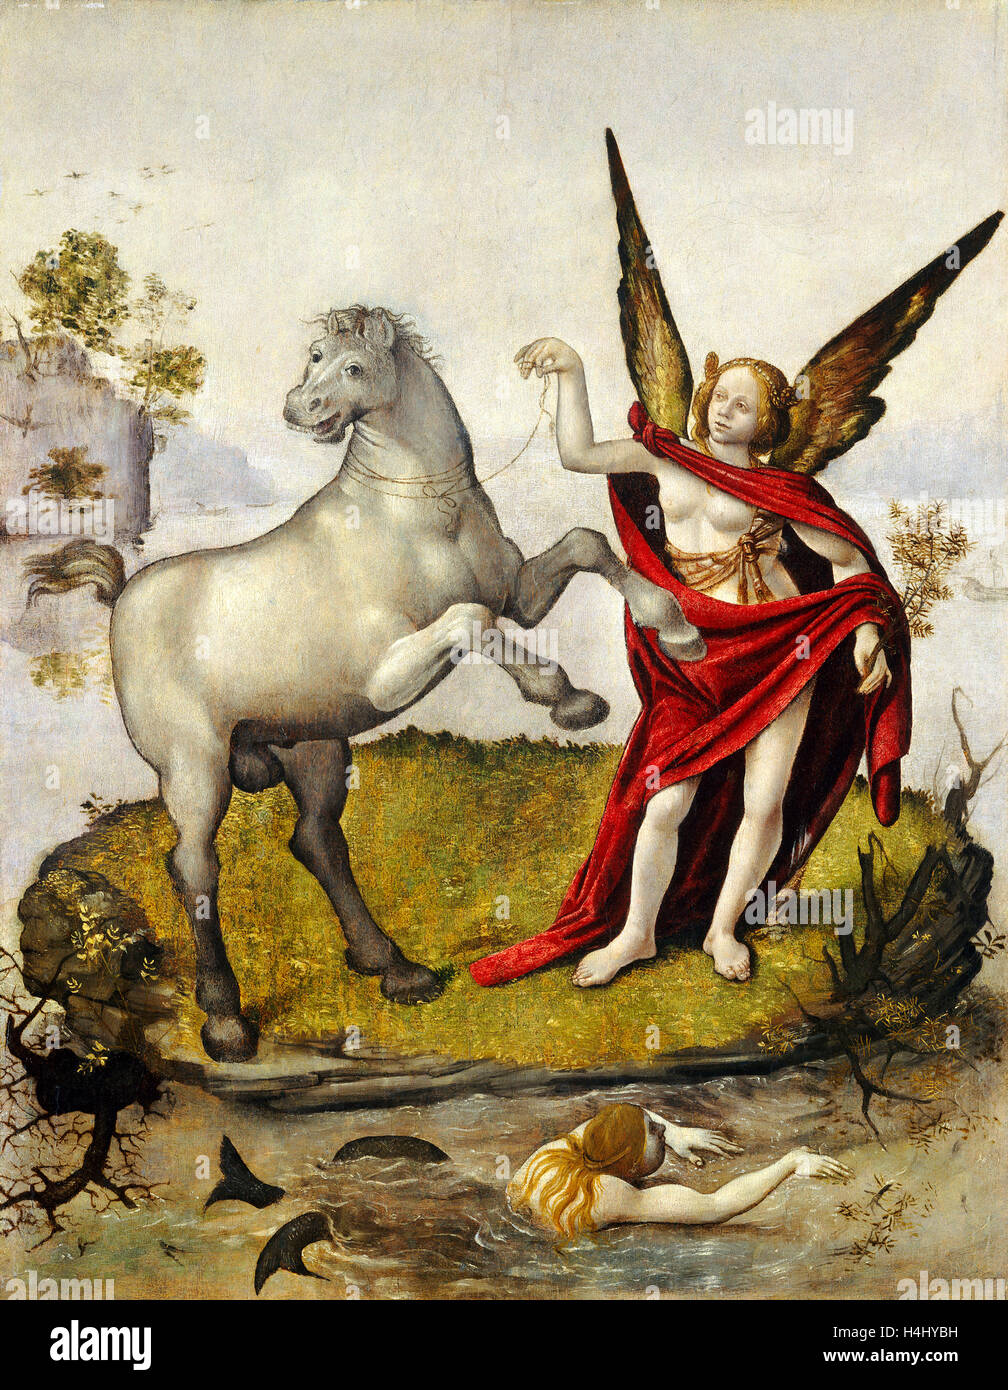 Piero di Cosimo, Allegory, Italian, 1462-1521, c. 1500, oil on panel Stock Photo